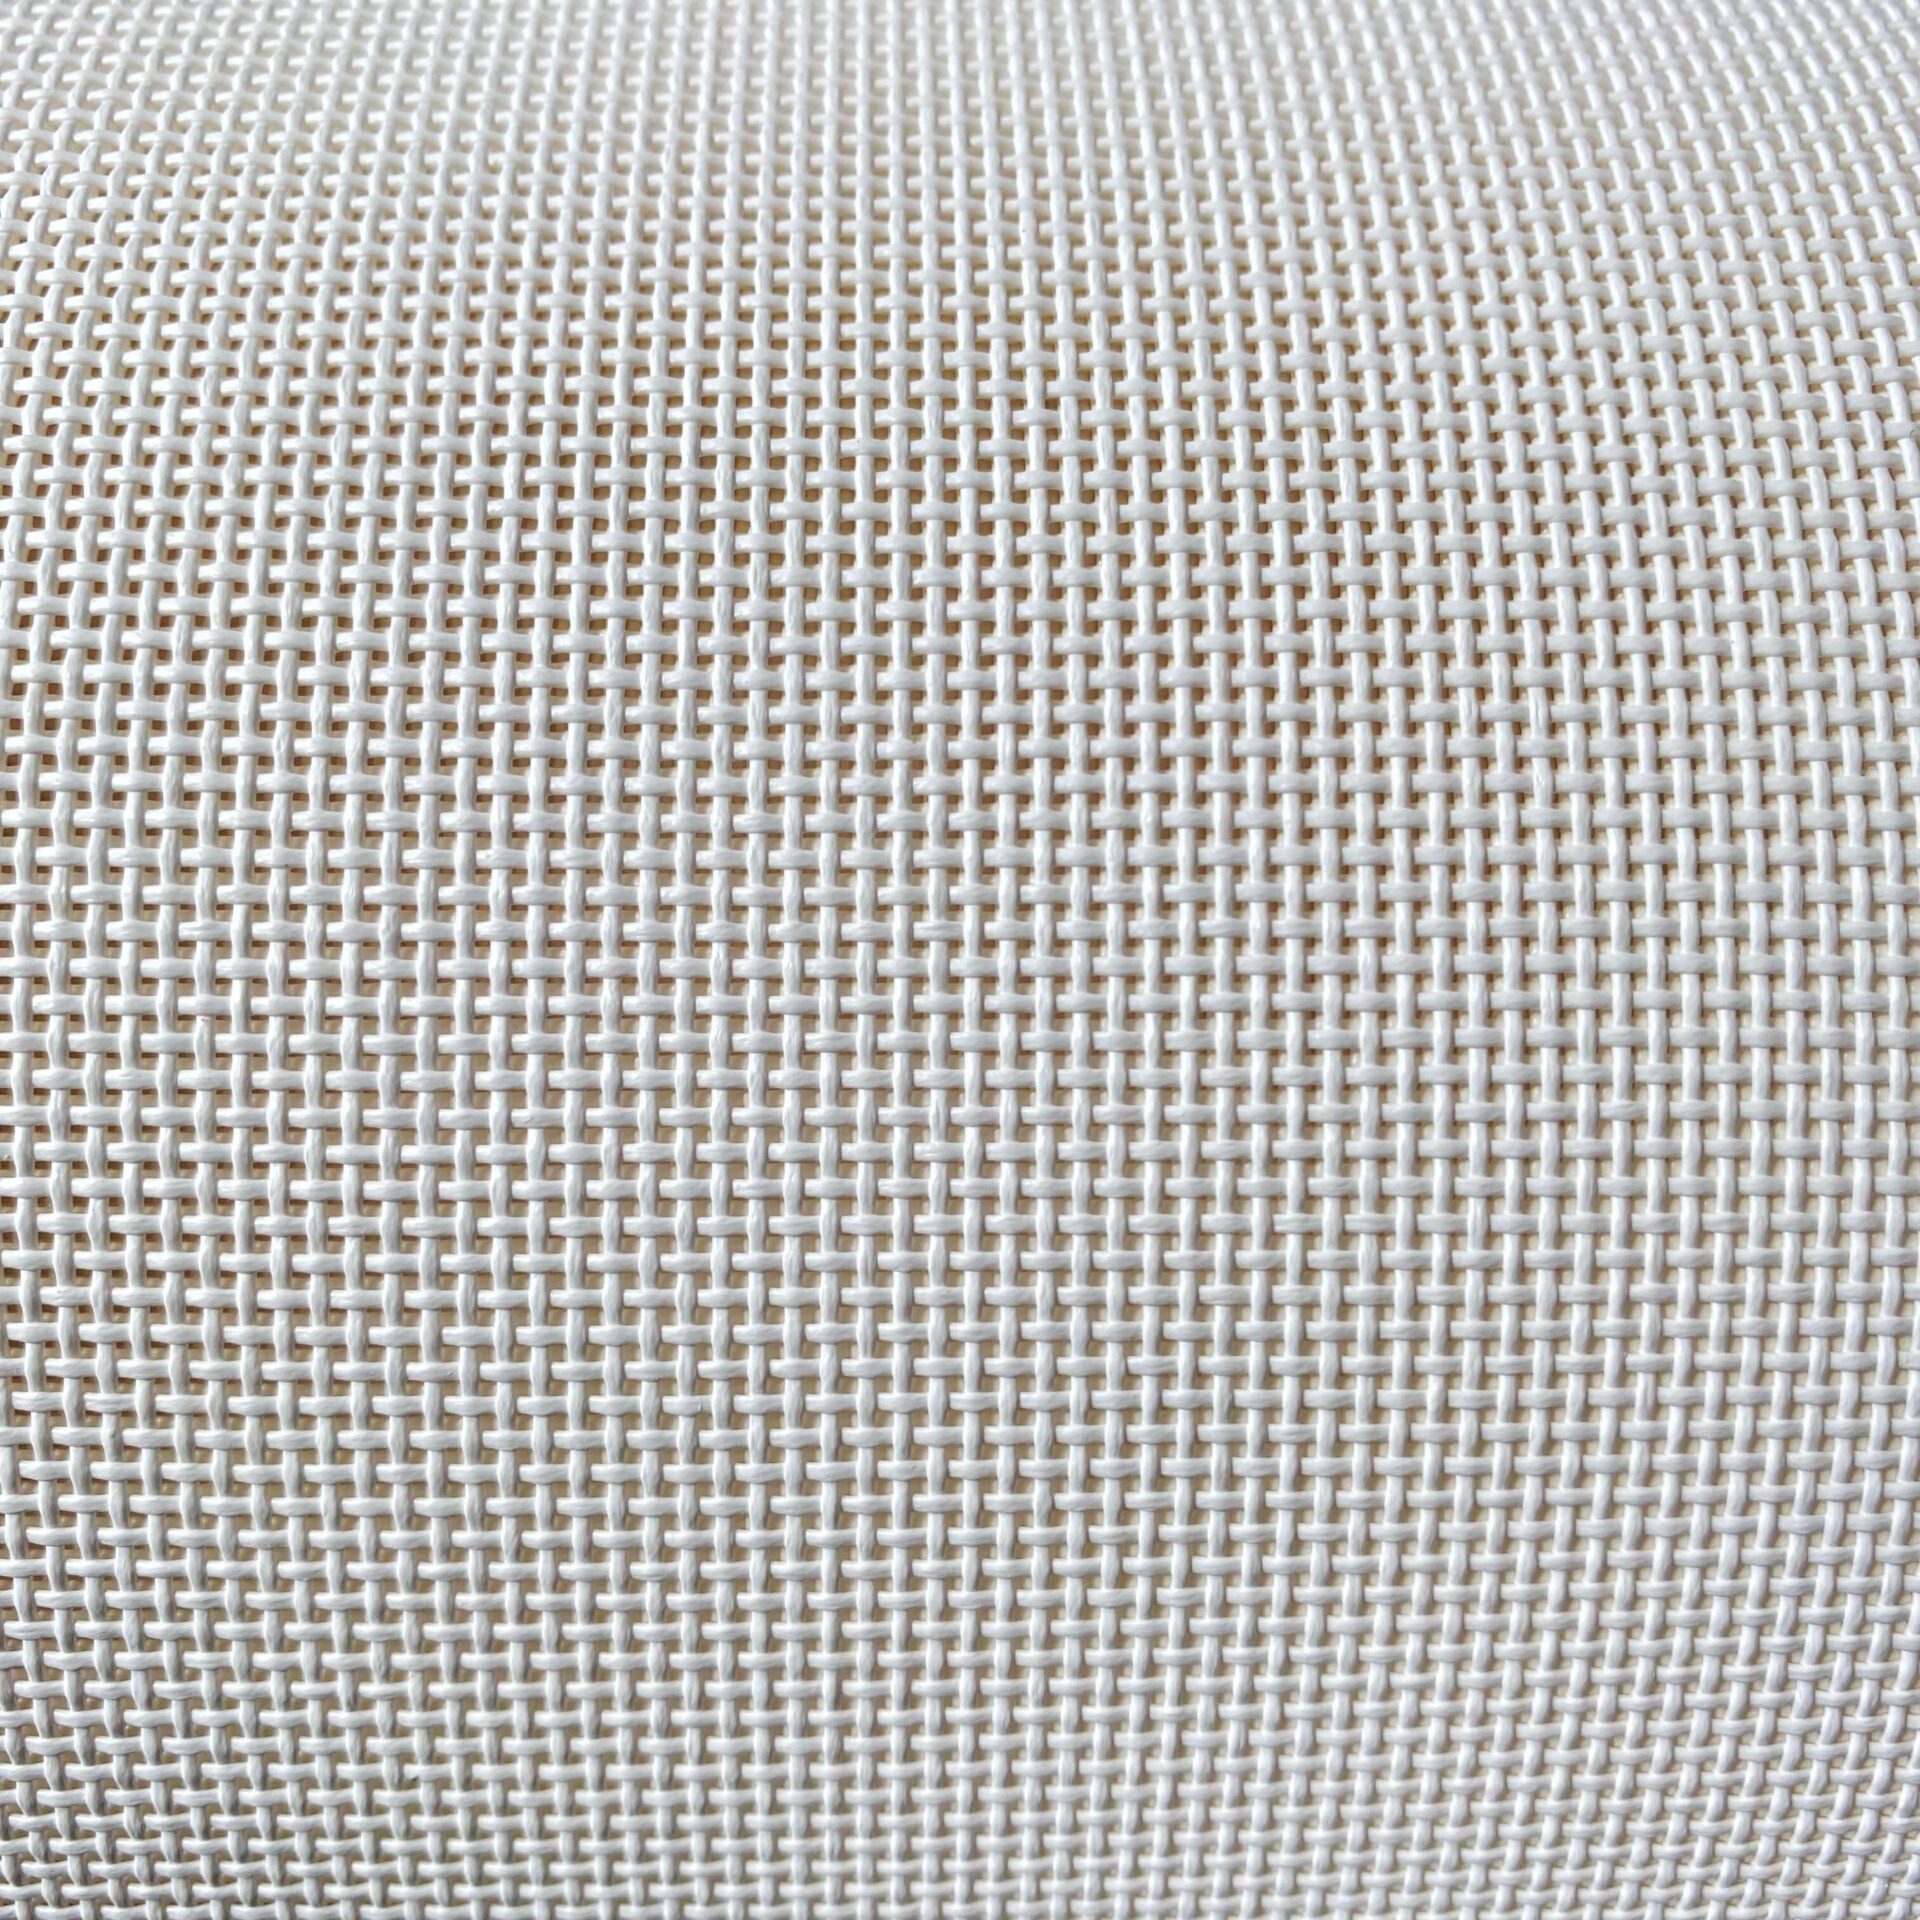 Phifertex Mesh Upholstery Fabric.